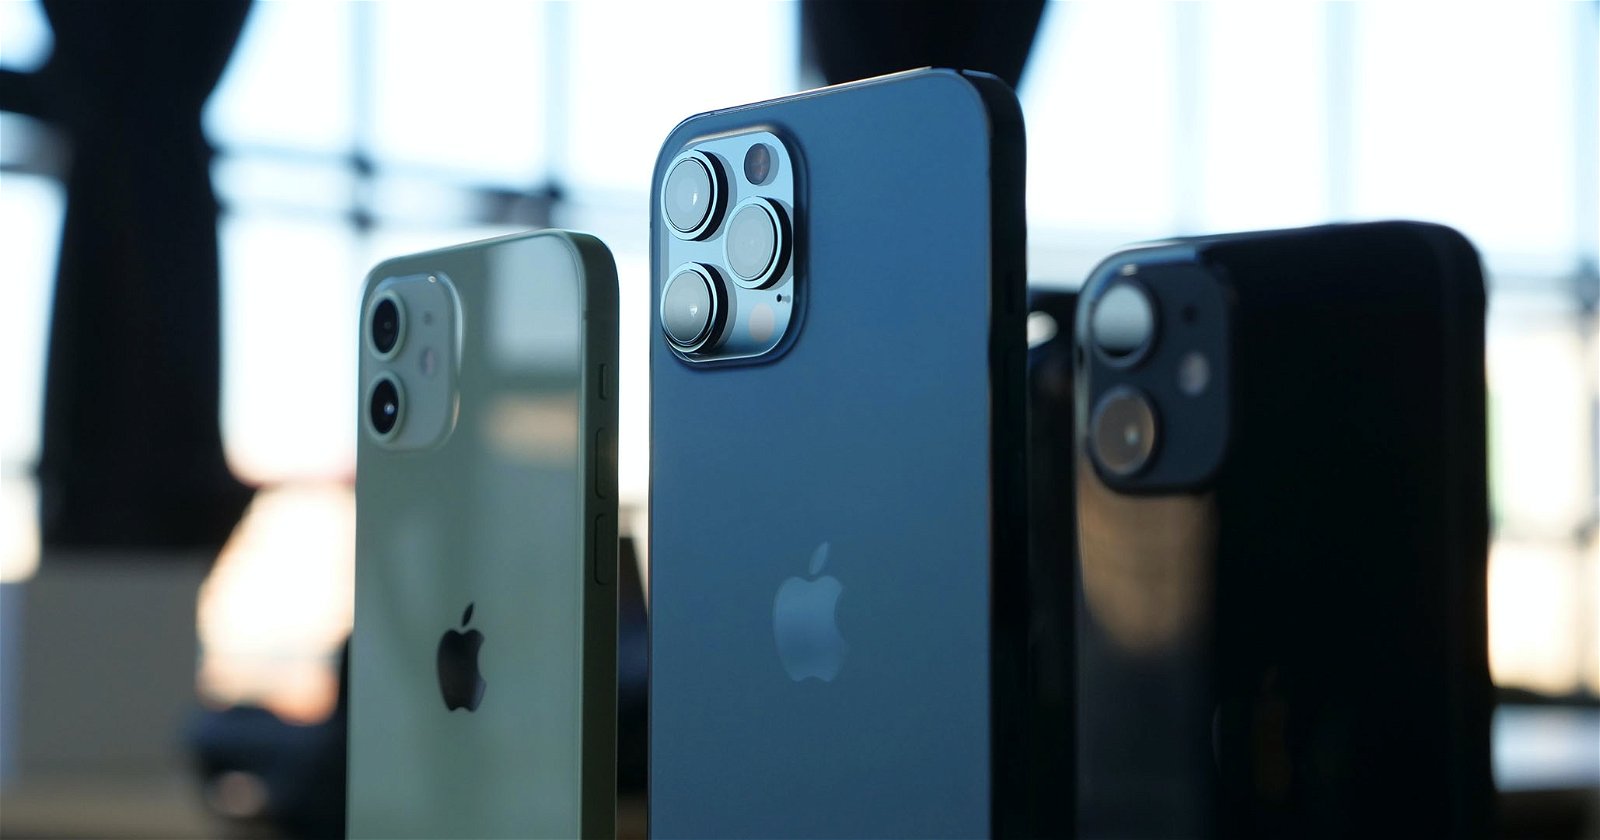 Cómo saber si un iPhone es original: 3 formas rápidas 2023